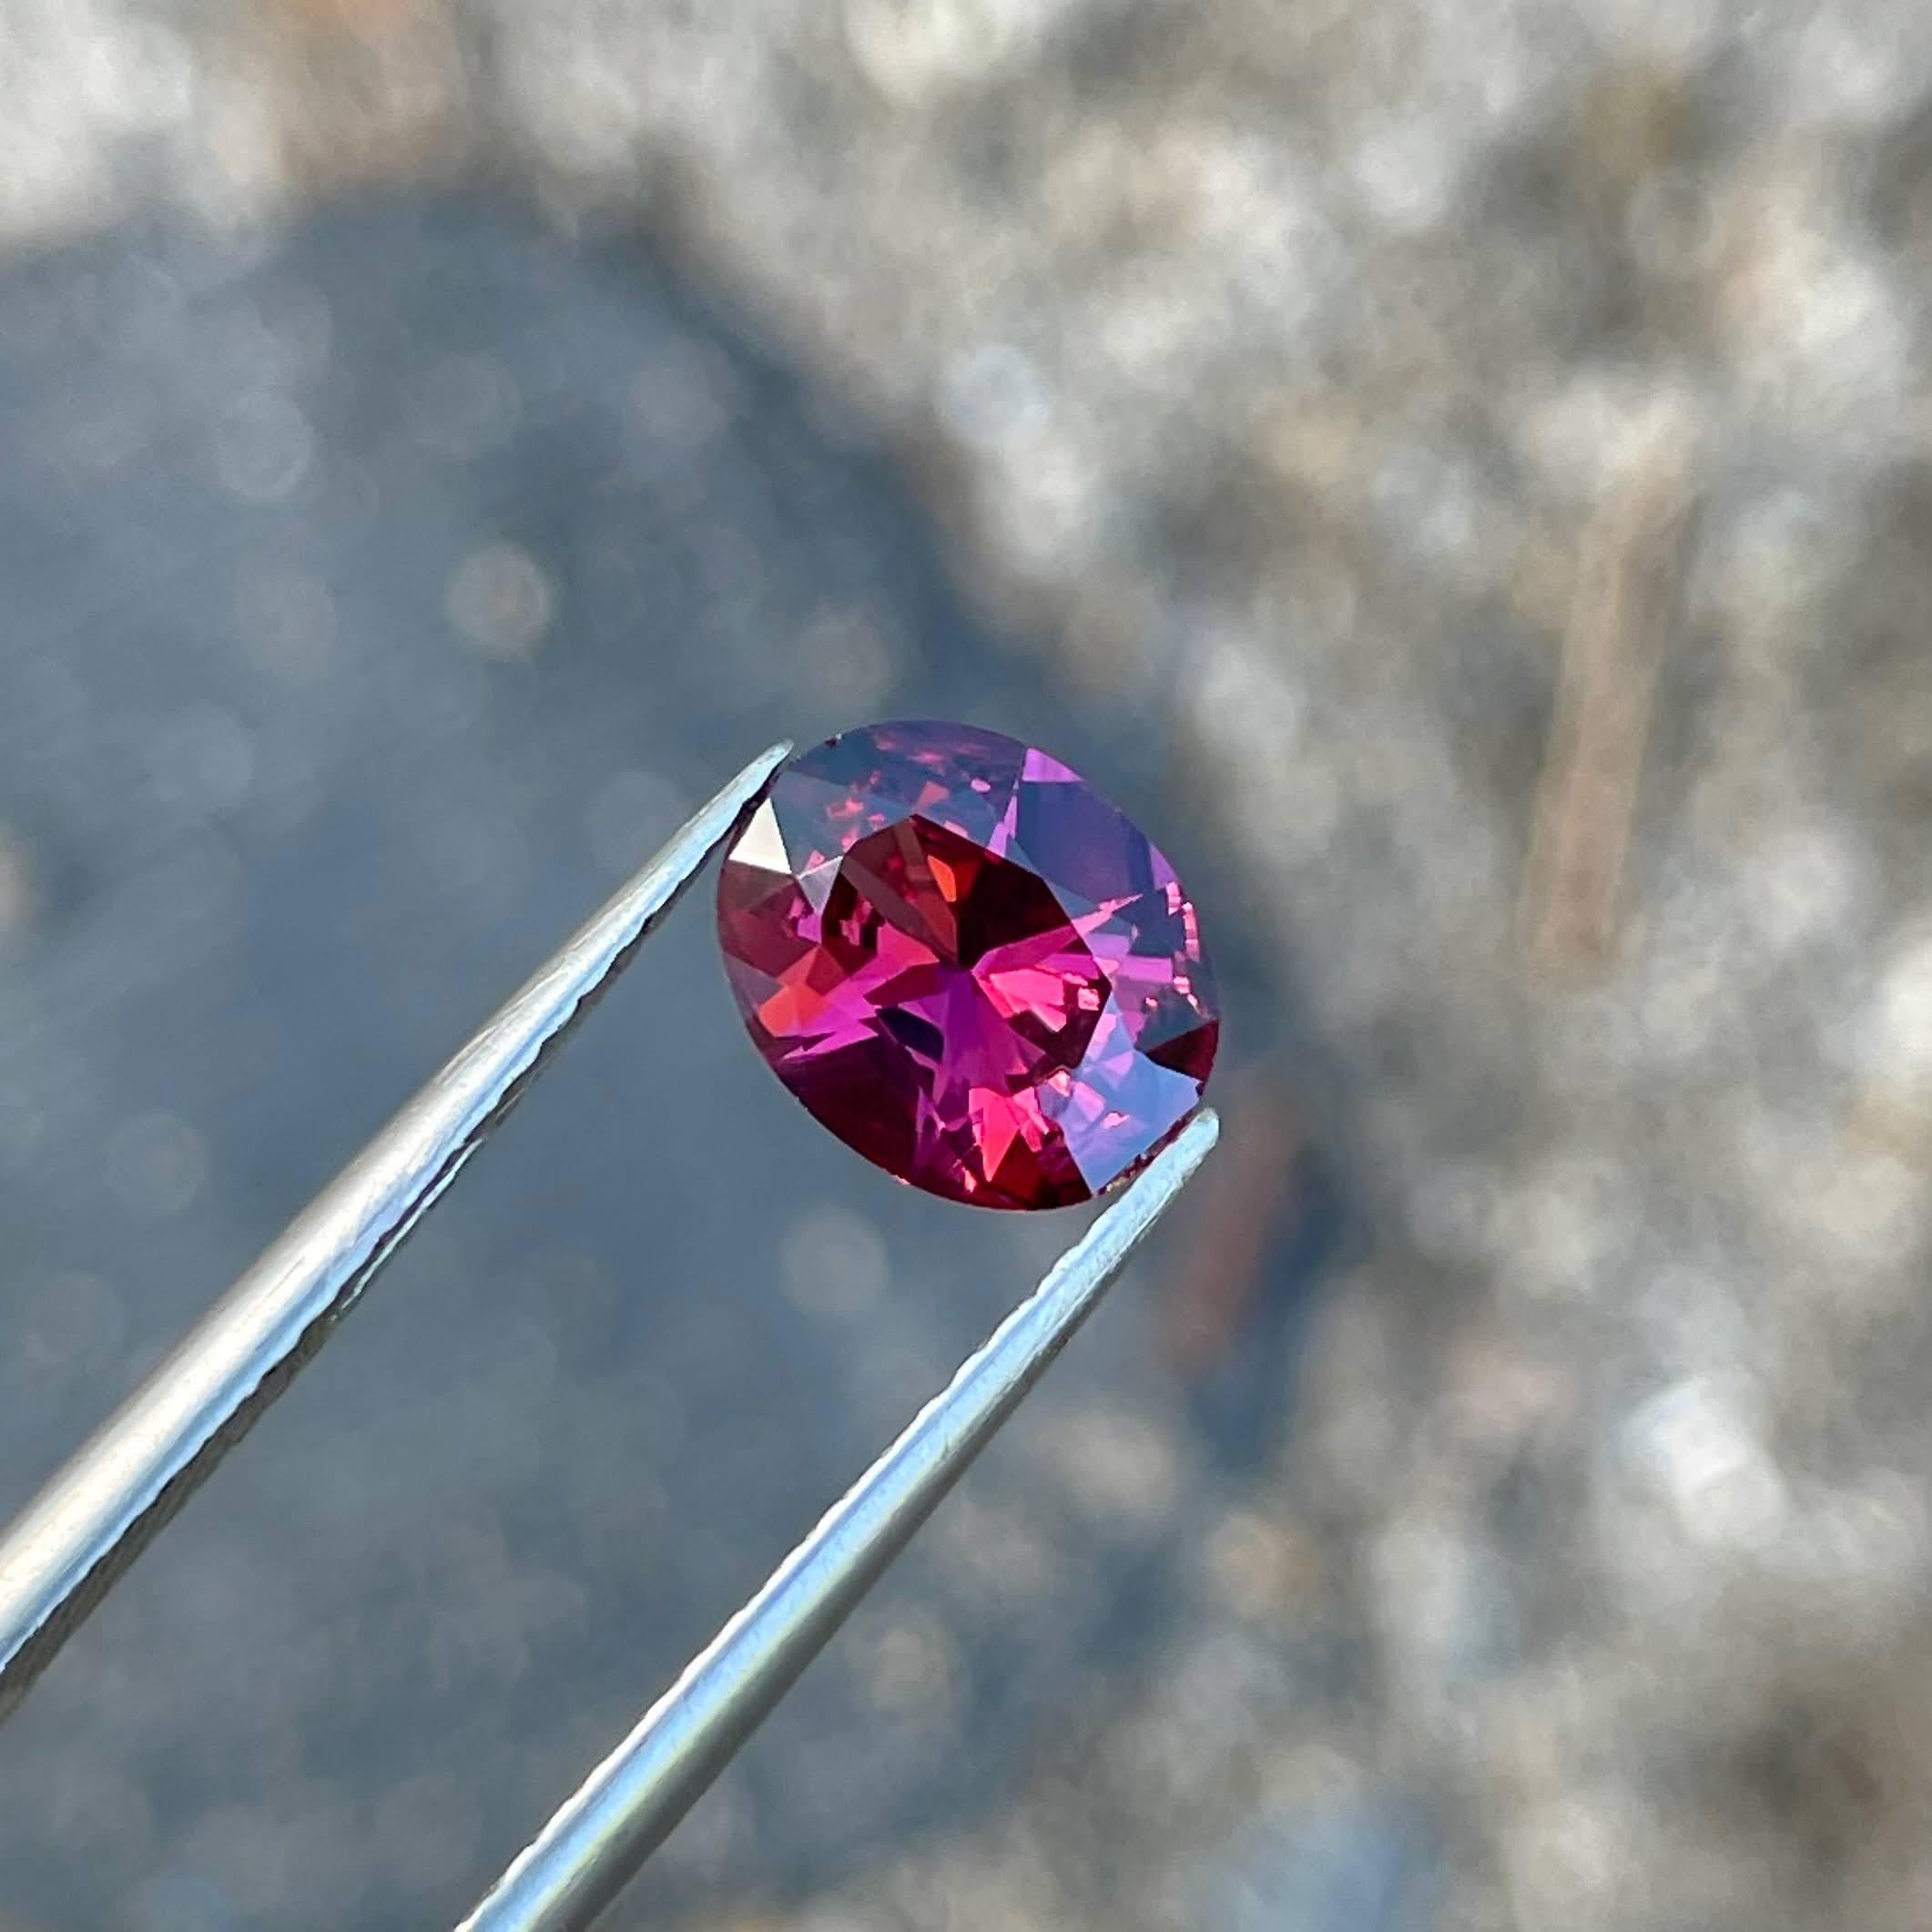 Poids 1,45 carats 
Dimensions 8,25x6,60x3,70 mm
Traitement aucun 
Origine Tanzanie 
Clarté VVs
Forme ovale 
Coupe ovale fantaisie 



La pierre grenat rouge rosé est une gemme rayonnante d'une beauté exquise, d'un poids de 1.45 carats. Taillé dans